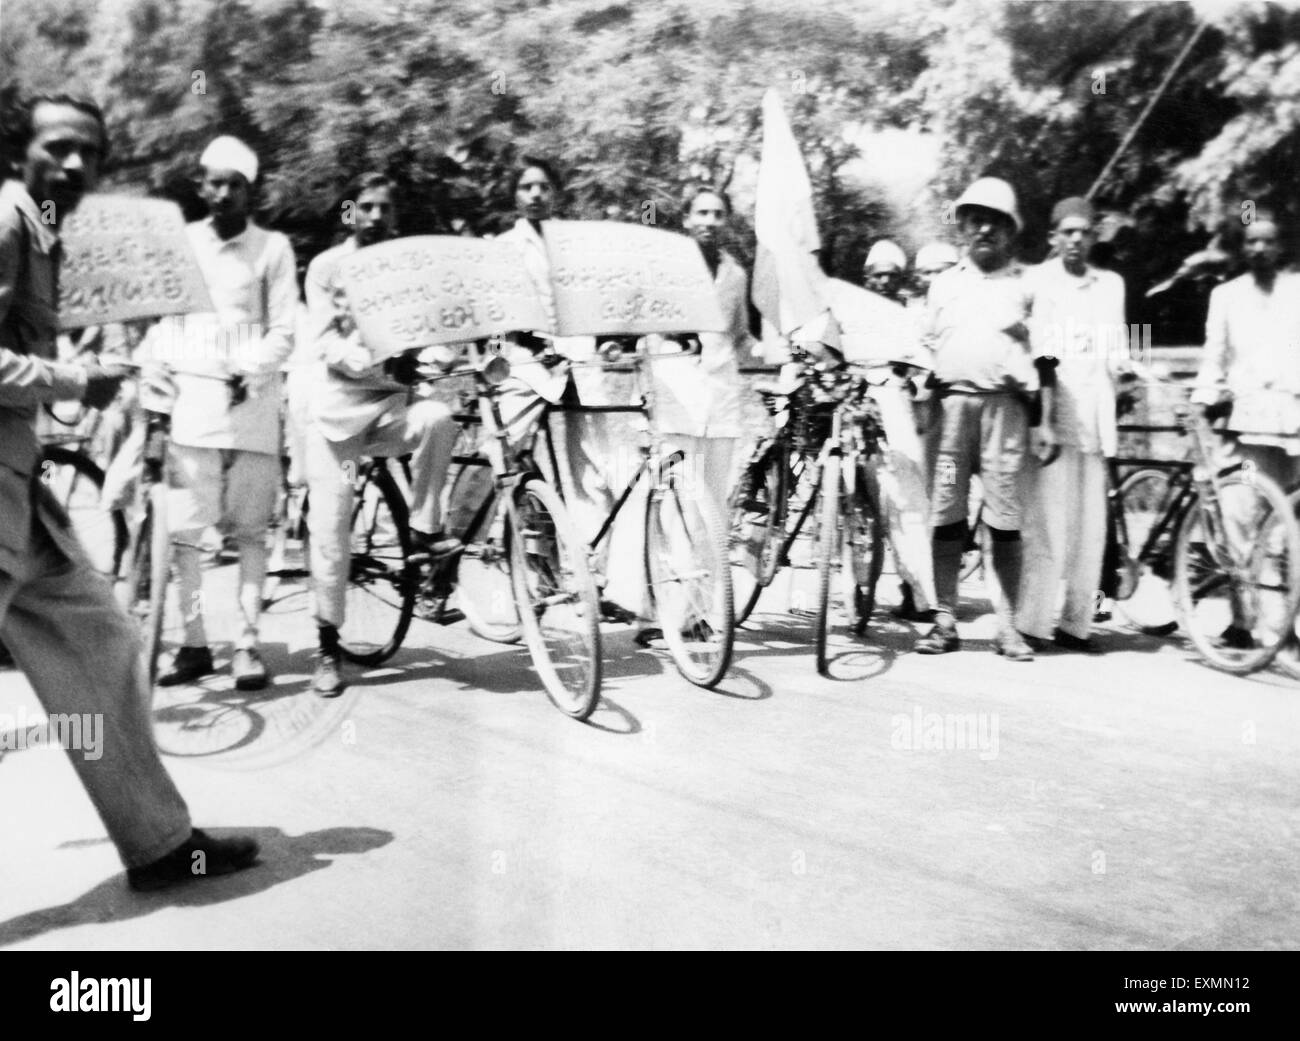 Demostración en bicicleta, lucha por la libertad, India, 1947, Asia, imagen antigua vintage de 1900s Foto de stock